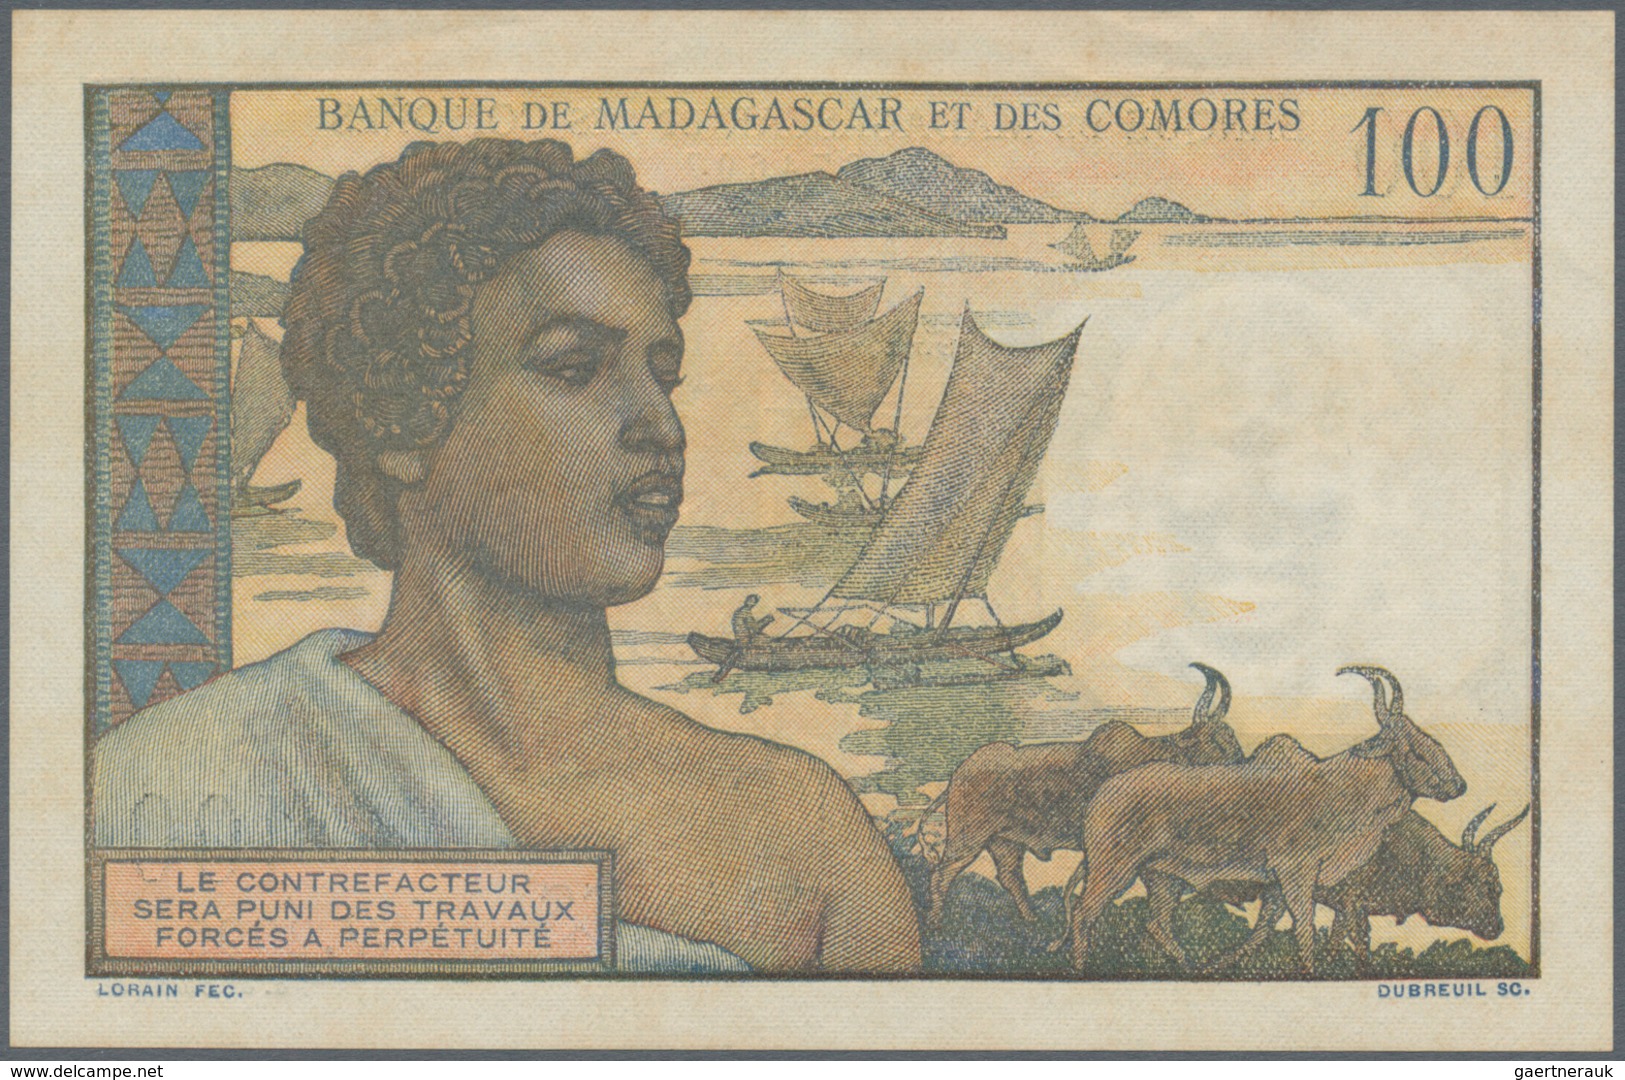 Madagascar: Set Of 2 Notes Madagascar / Comores Containing 500 Francs 1950 P. 47a, Used With Folds, - Madagaskar